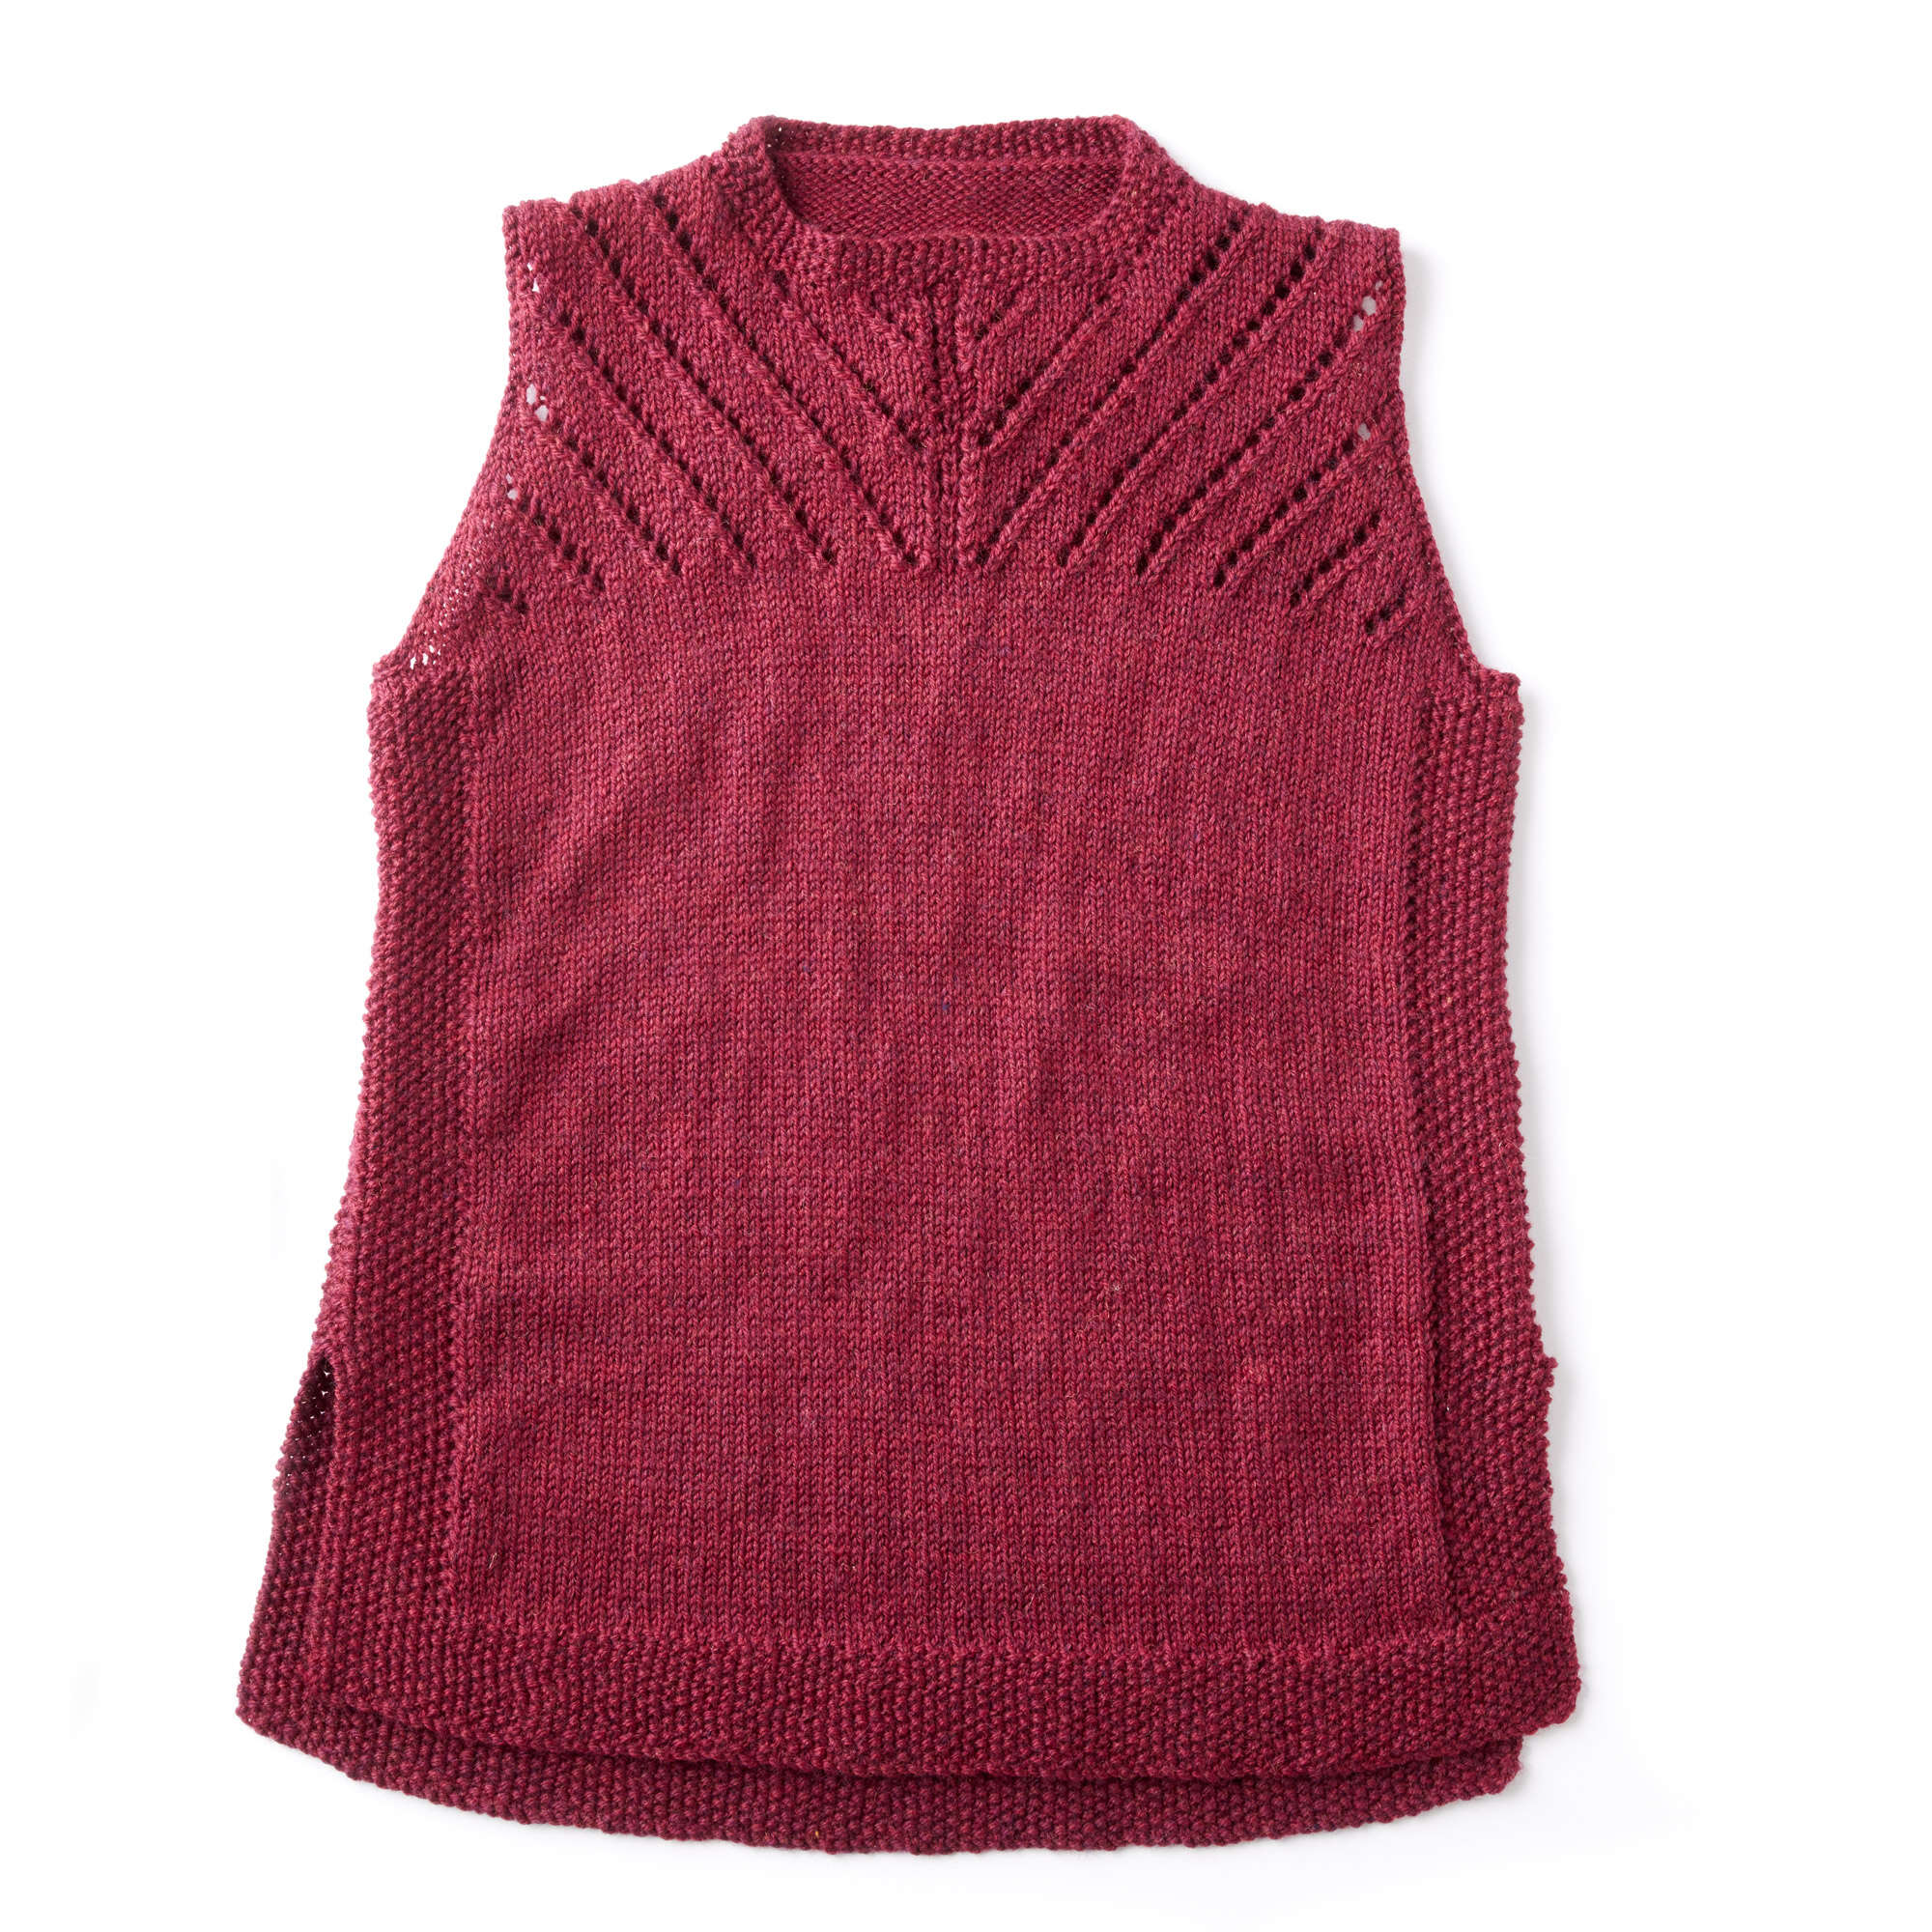 Free Patons Sleeveless Knit Shell Pattern | Yarnspirations